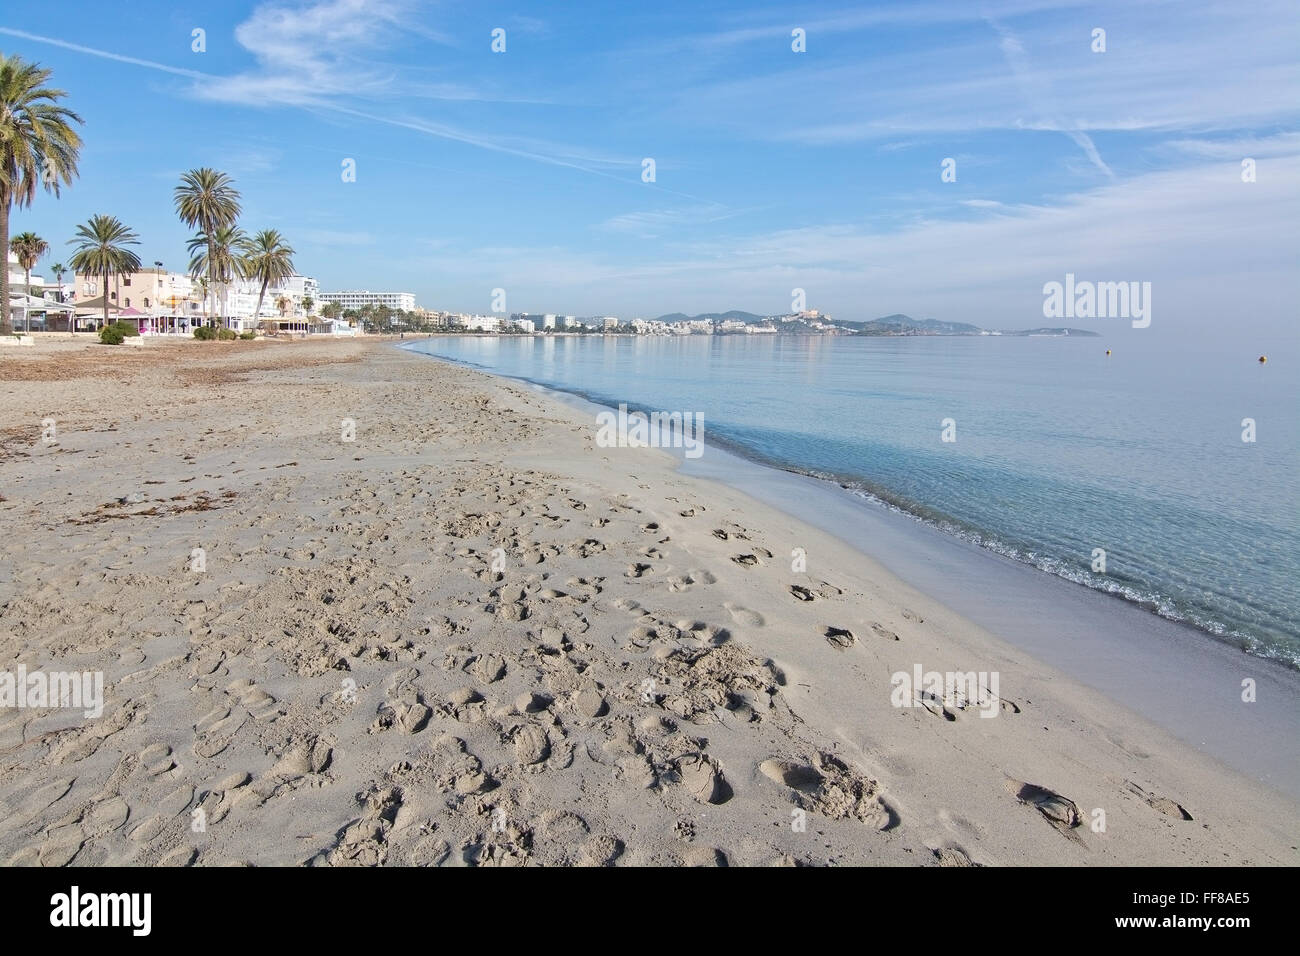 Dreamy soft winter beach on Playa d'en Bossa on December 17, 2015 in Ibiza, Spain. Stock Photo